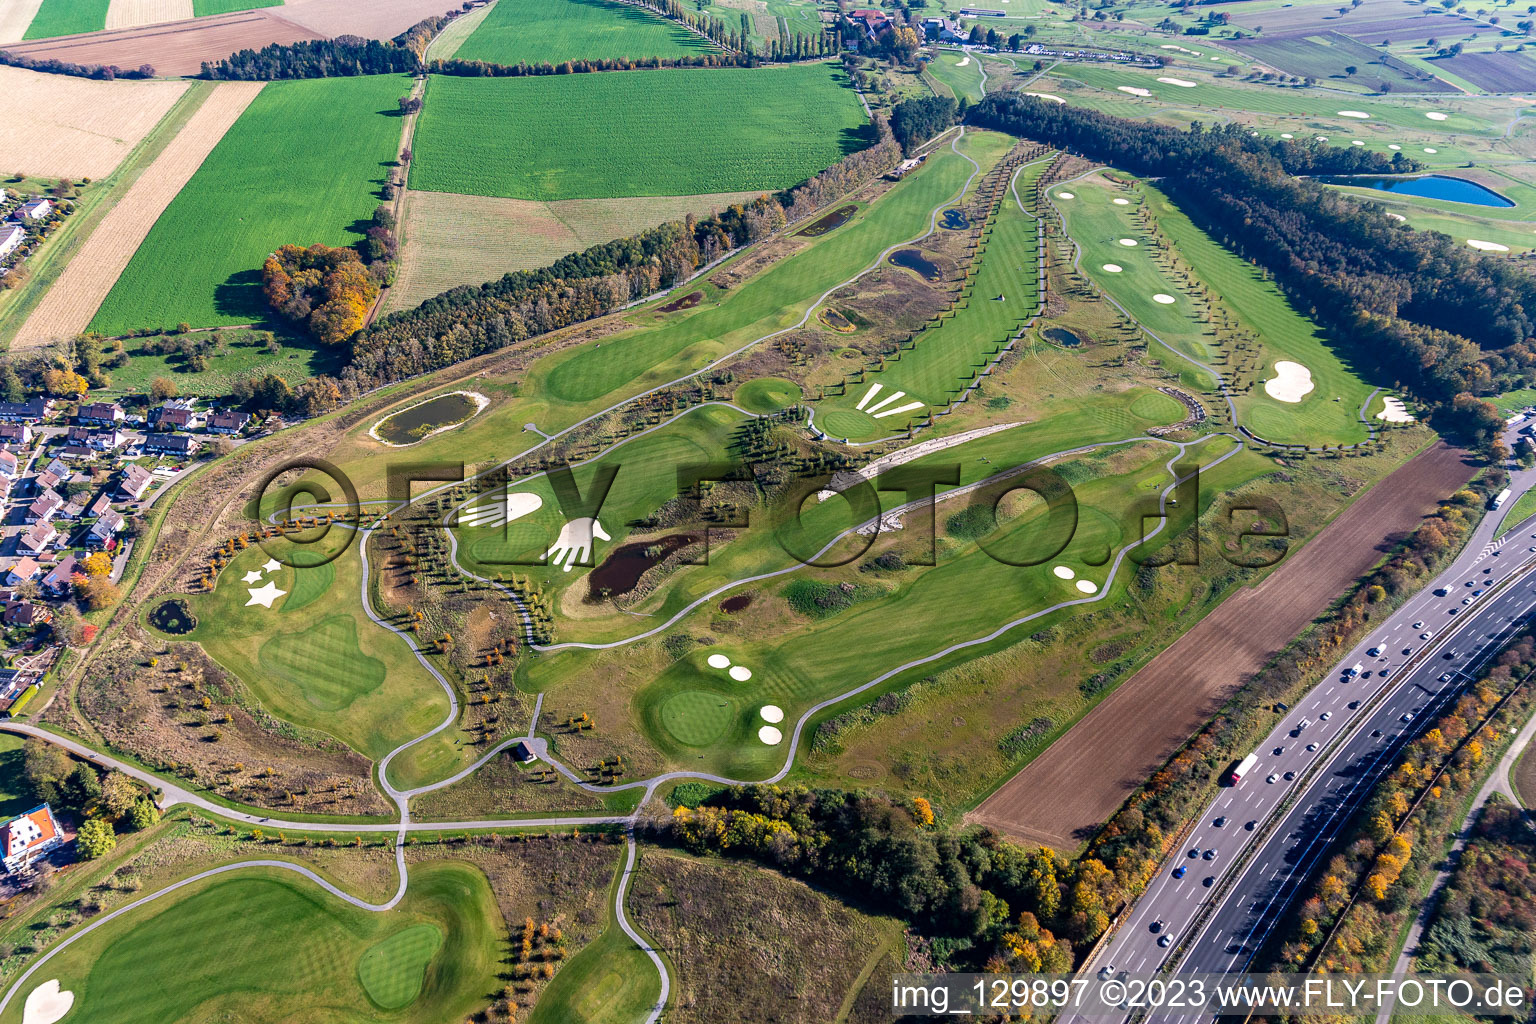 Gelände des Golfplatz Golfpark Karlsruhe GOLF absolute in Karlsruhe im Ortsteil Hohenwettersbach im Bundesland Baden-Württemberg, Deutschland von oben gesehen